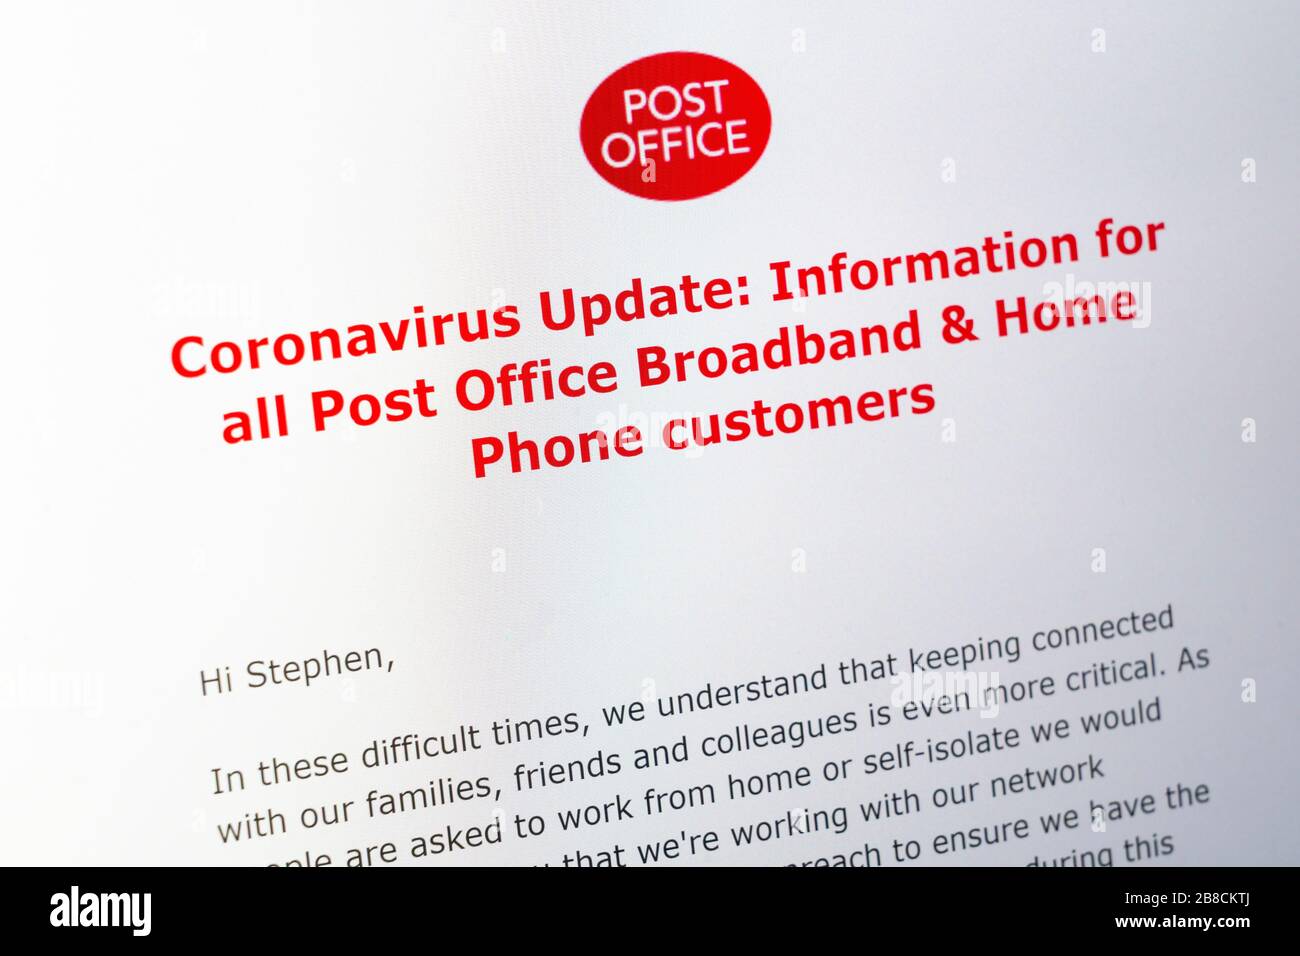 Un correo electrónico de actualización de coronavirus de la oficina de correos para clientes de banda ancha y teléfonos domésticos que informan sobre cómo mantenerse conectado durante el aislamiento personal, Reino Unido Foto de stock